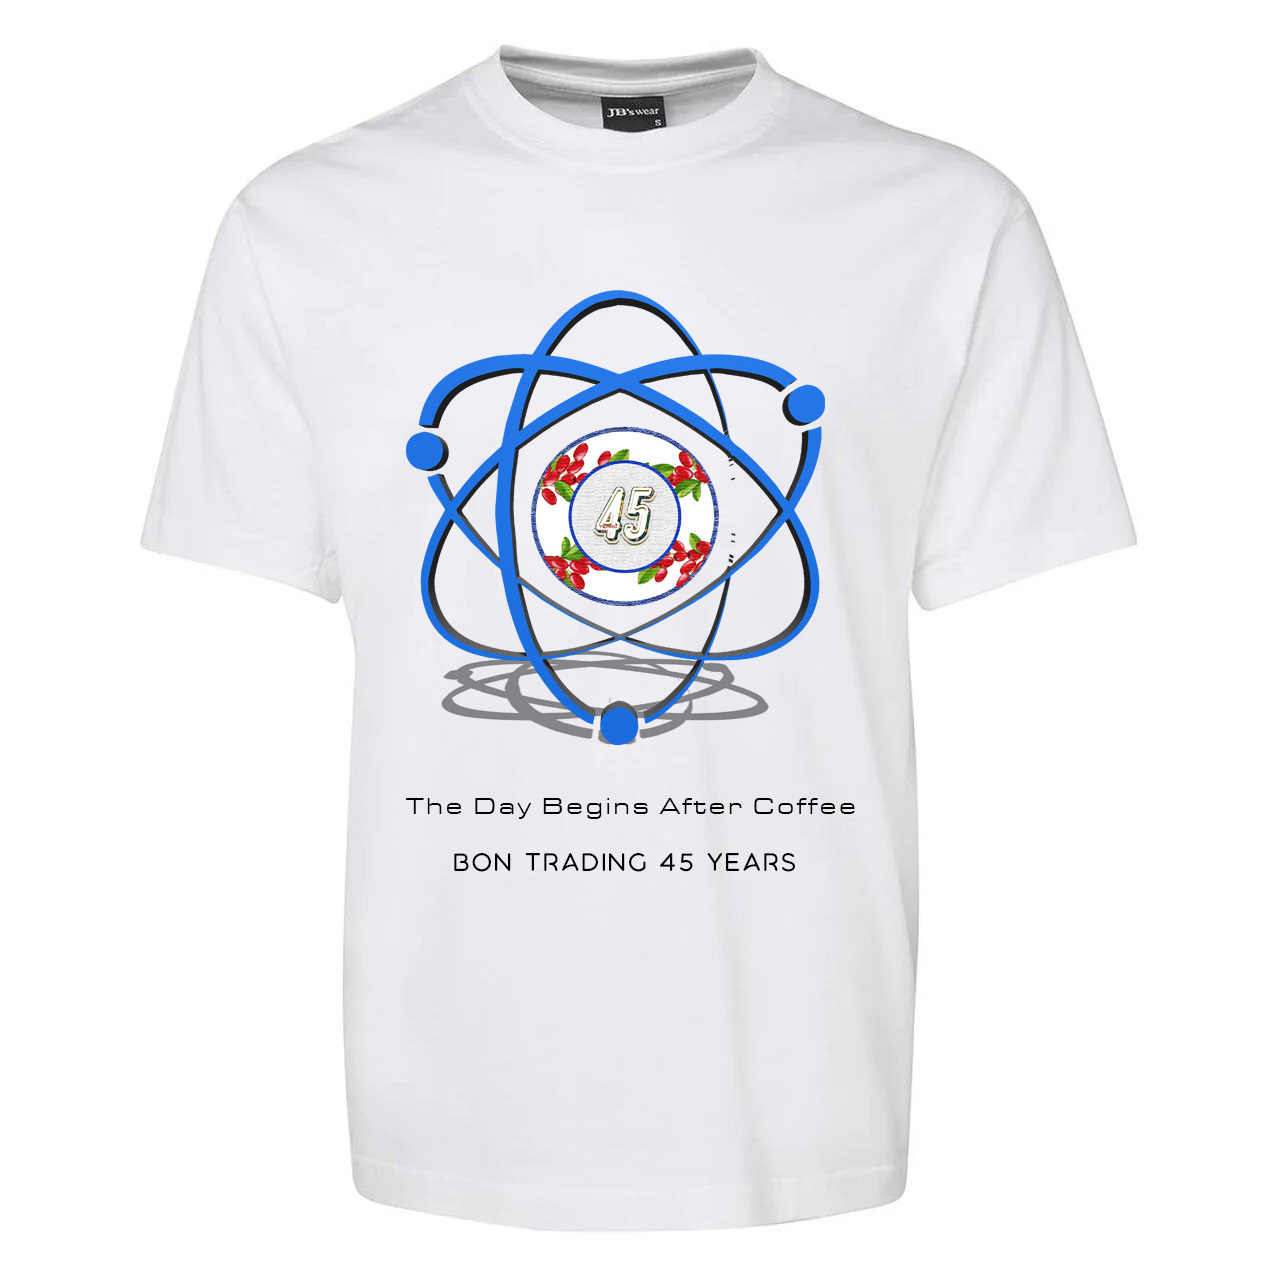 Atomic Coffee T-shirt anniversary